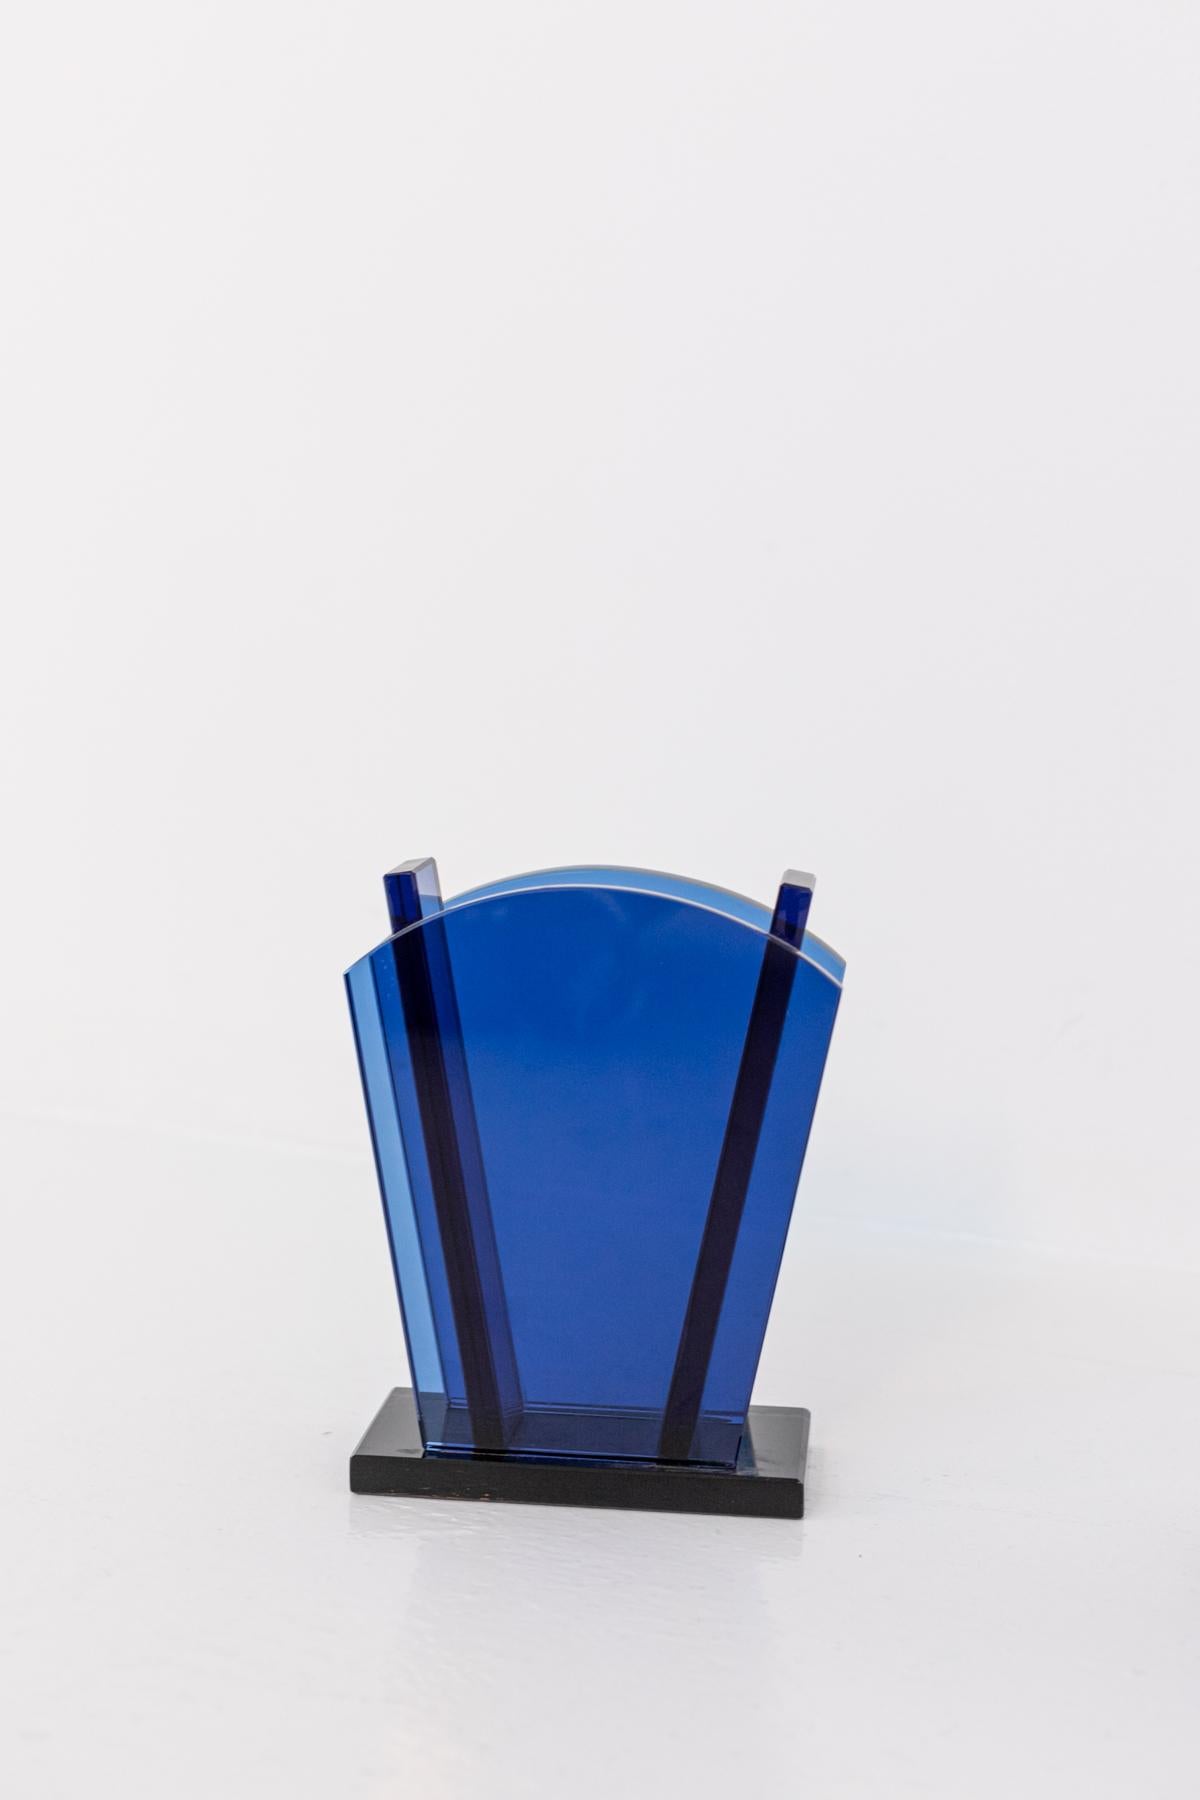 Ettore Sottsass Vase for Fontana Arte in Blue Glass 1